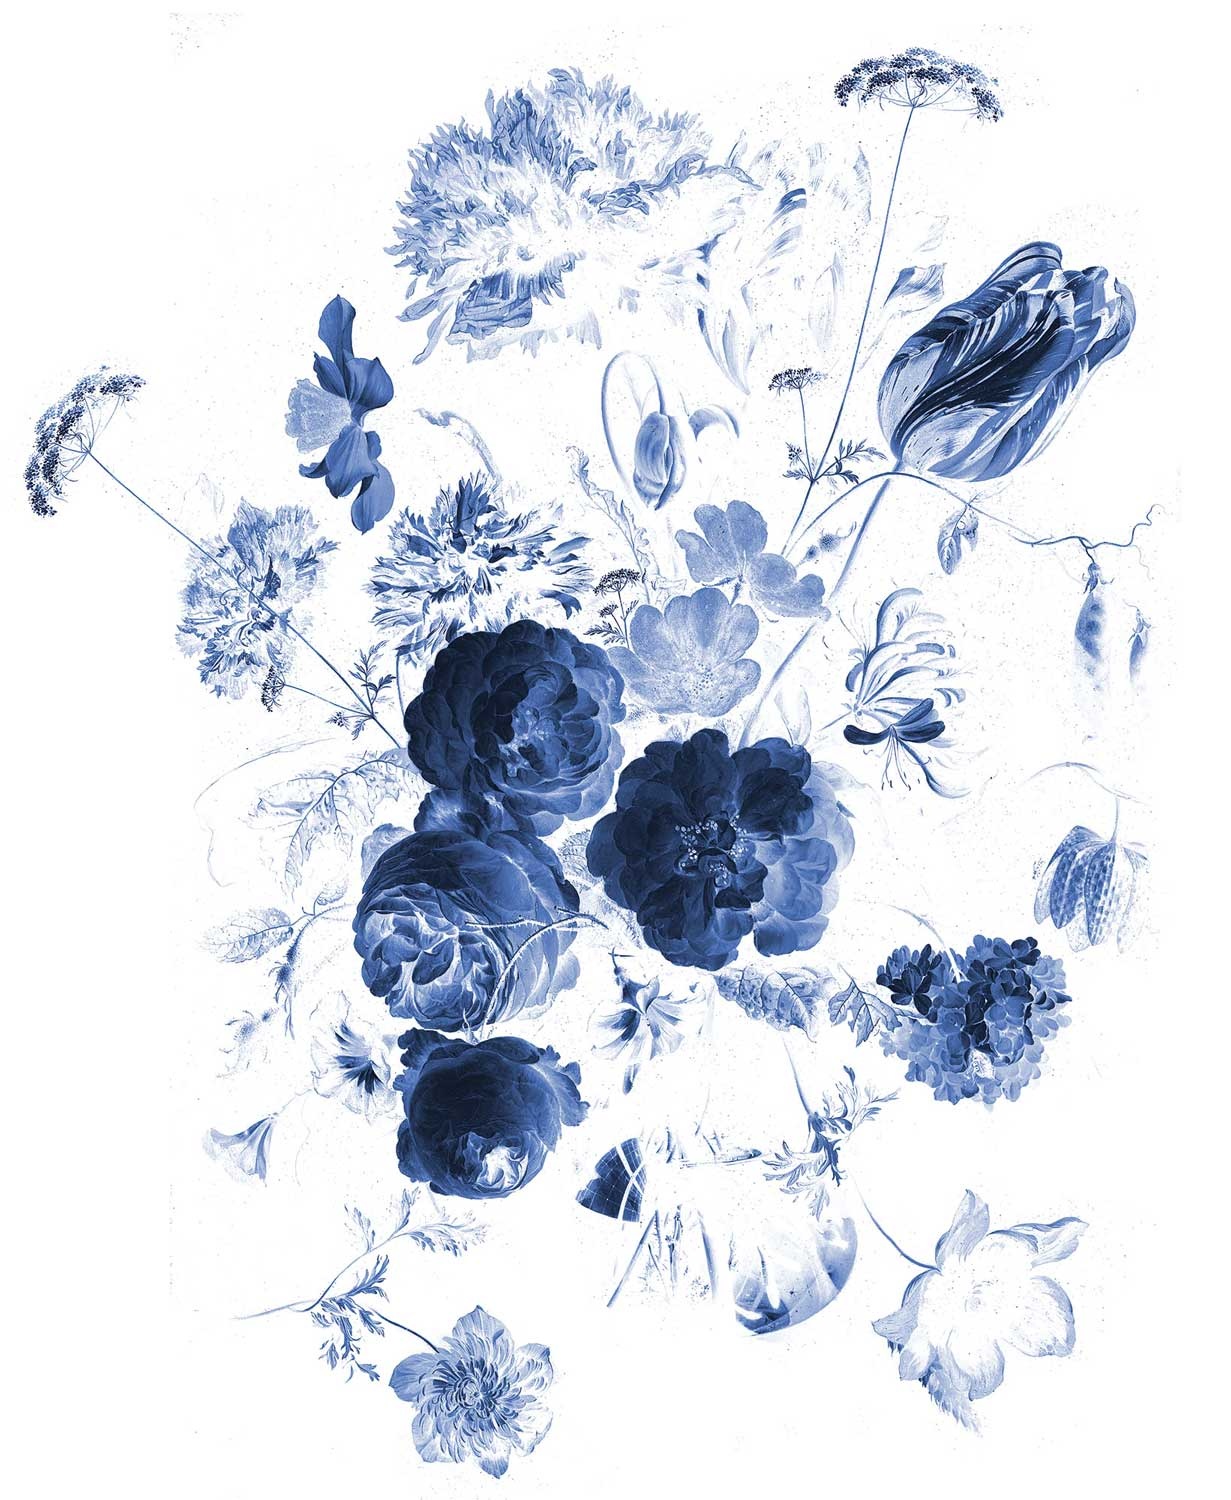 Skim aansporing Conceit Behang Royal Blue Flowers Blauwe Bloemen WP-207 - KEK Amsterdam